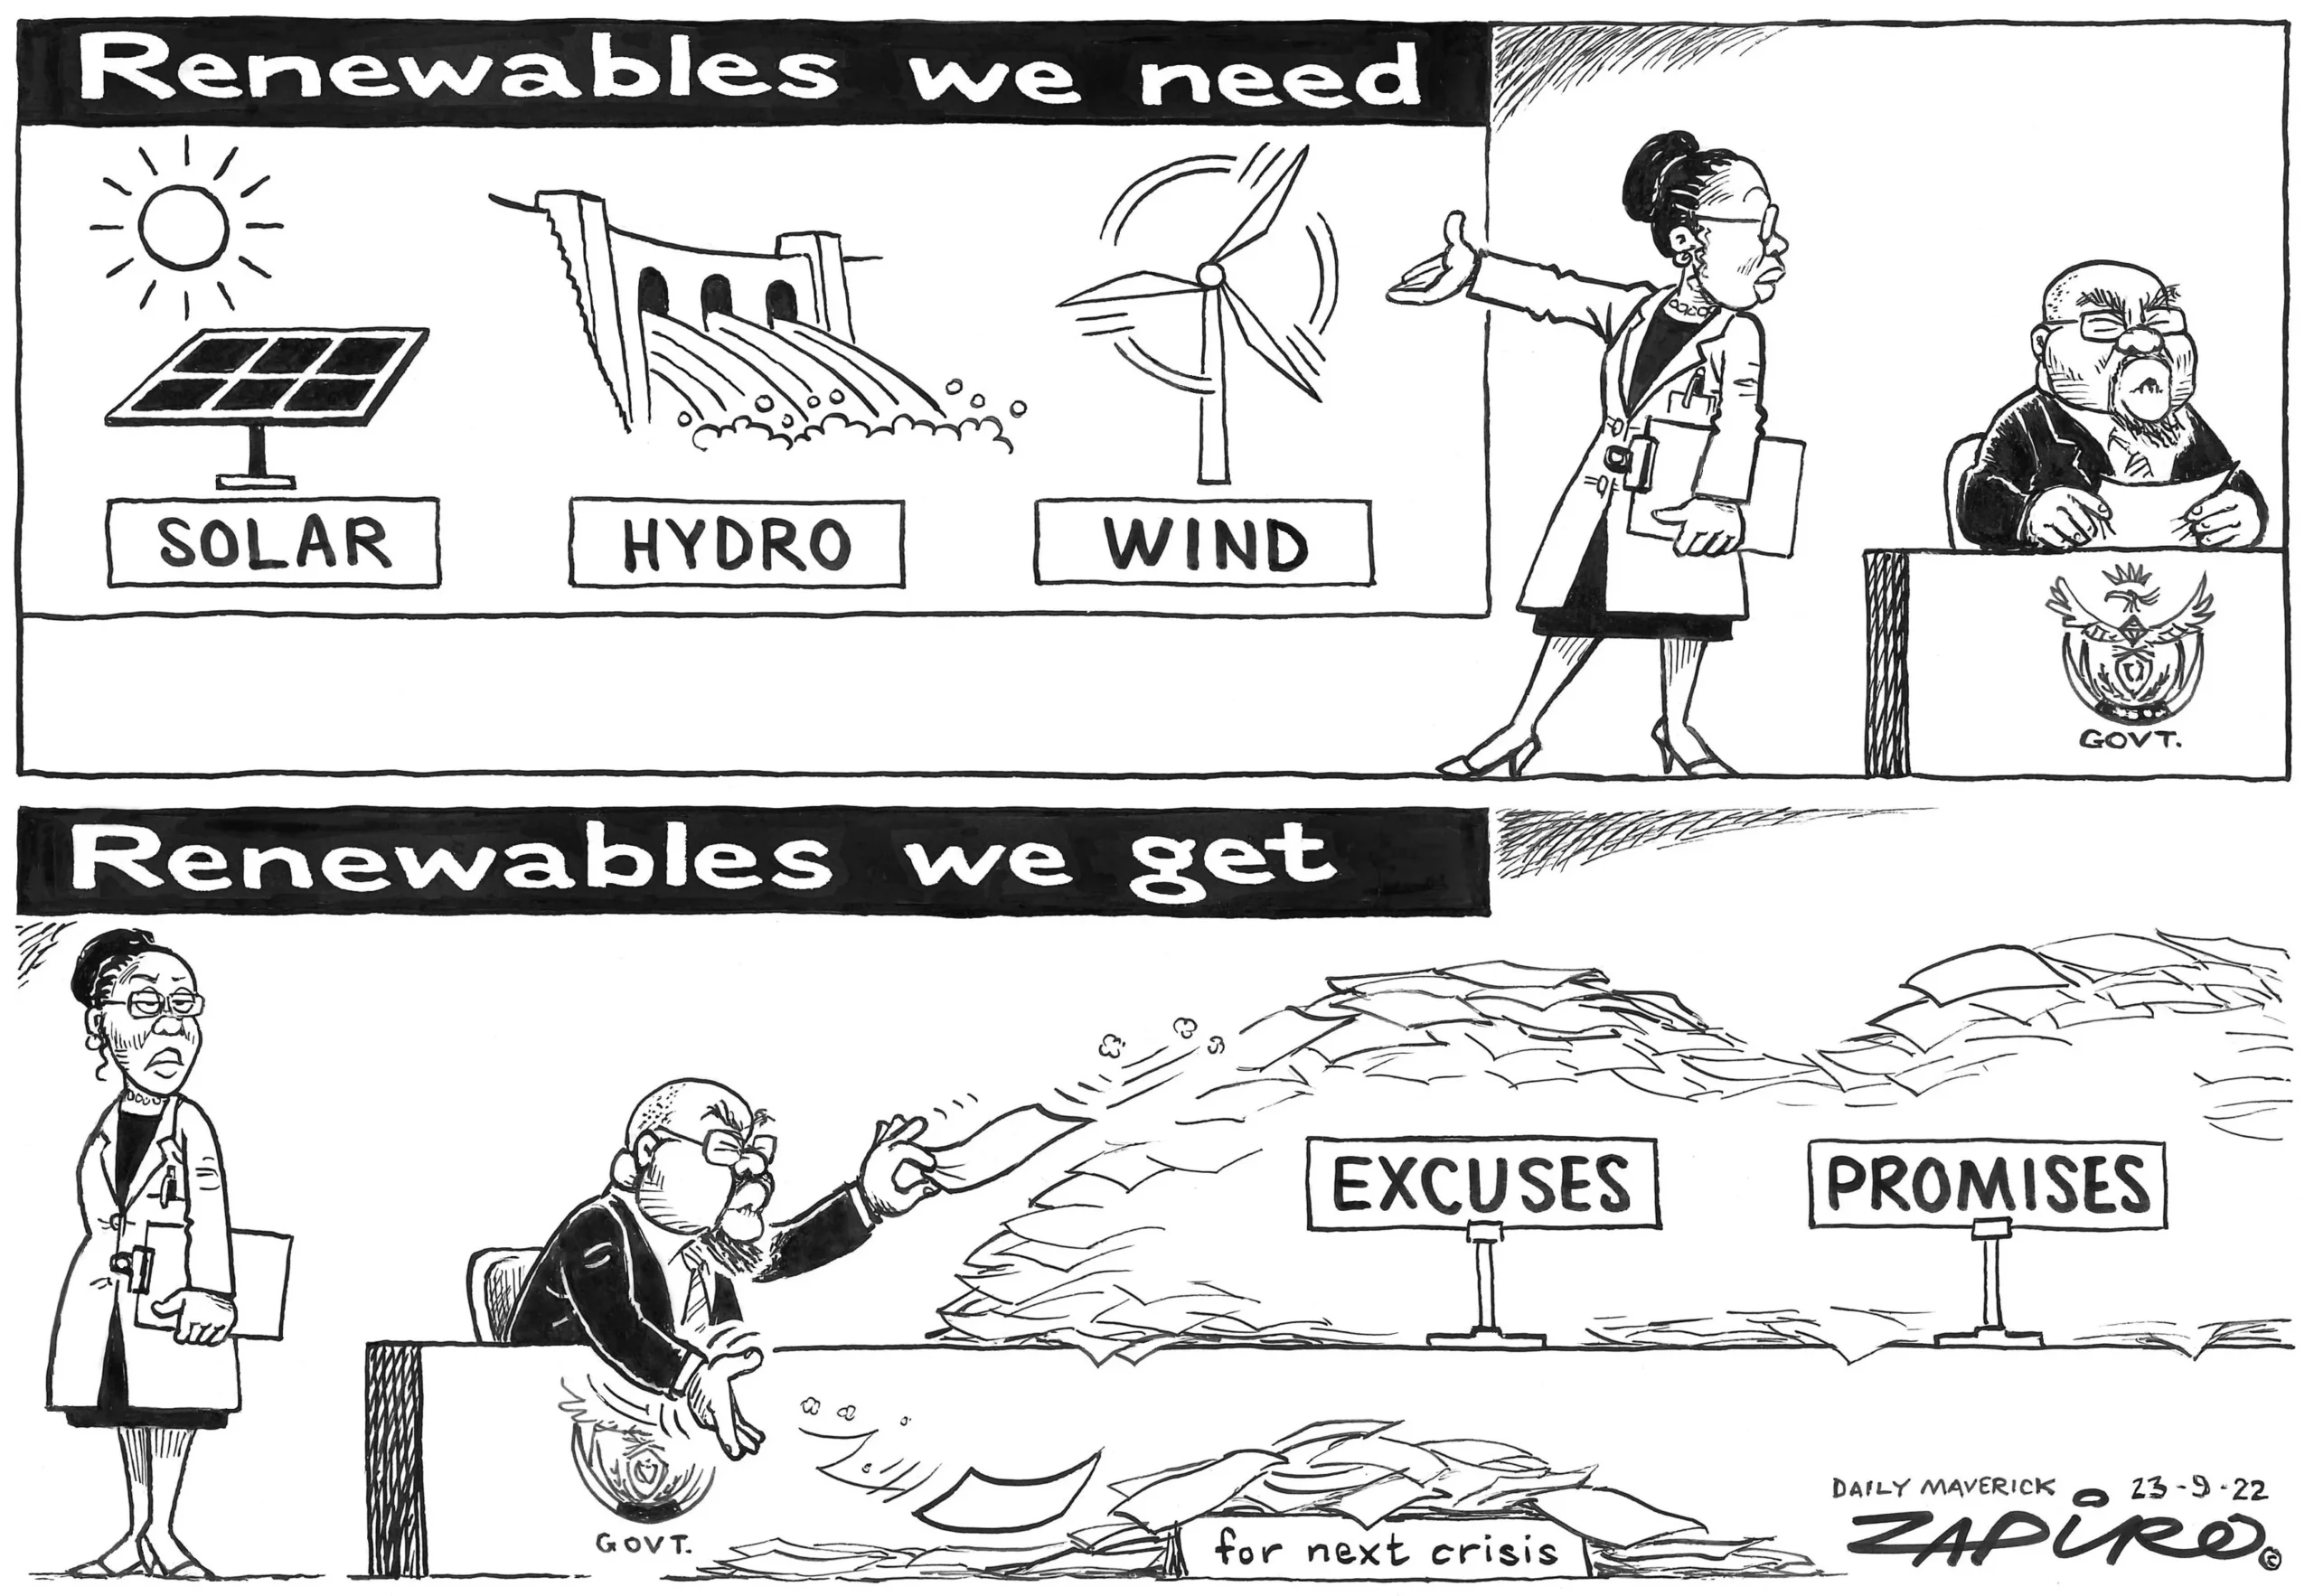 Renewables We Need - Renewables We Get (by Zapiro)